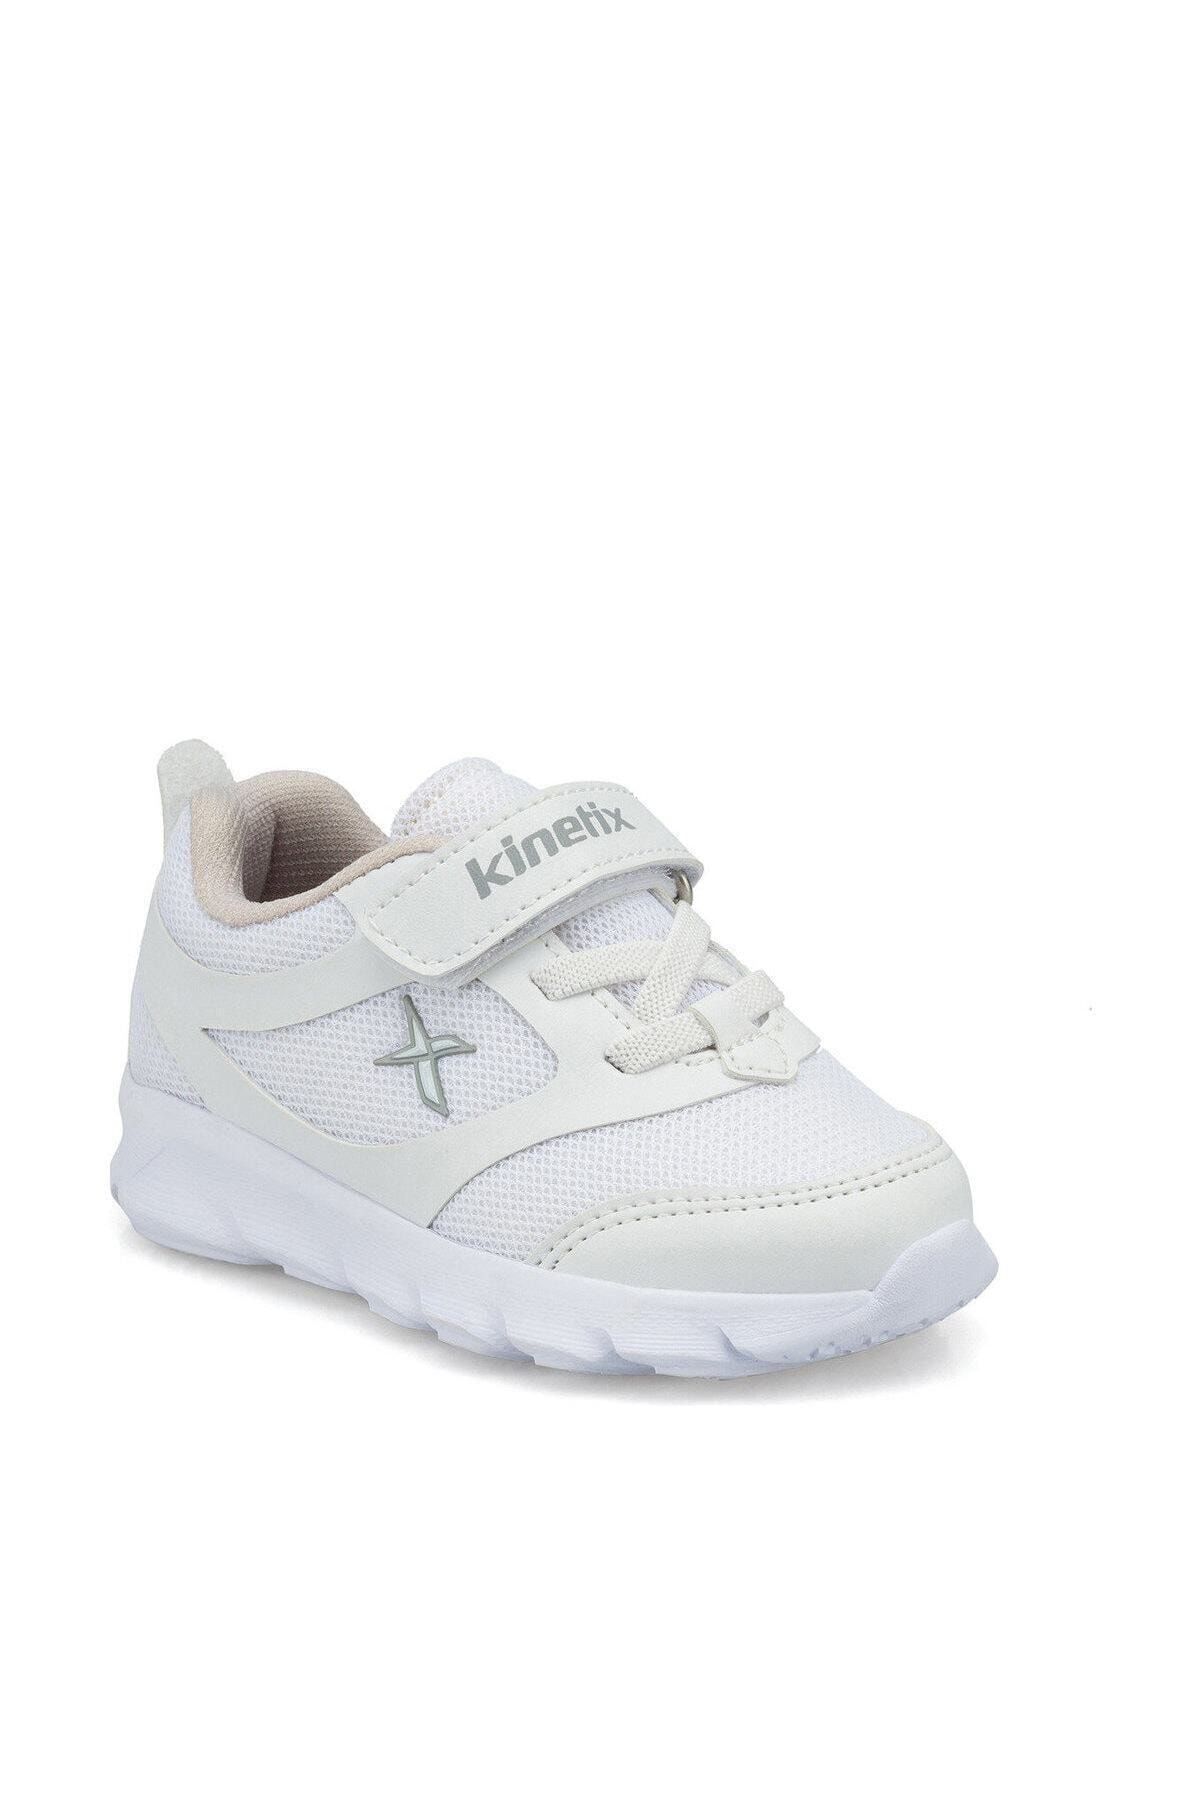 Kinetix ALMERA J Beyaz Erkek Çocuk Koşu Ayakkabısı 100491915